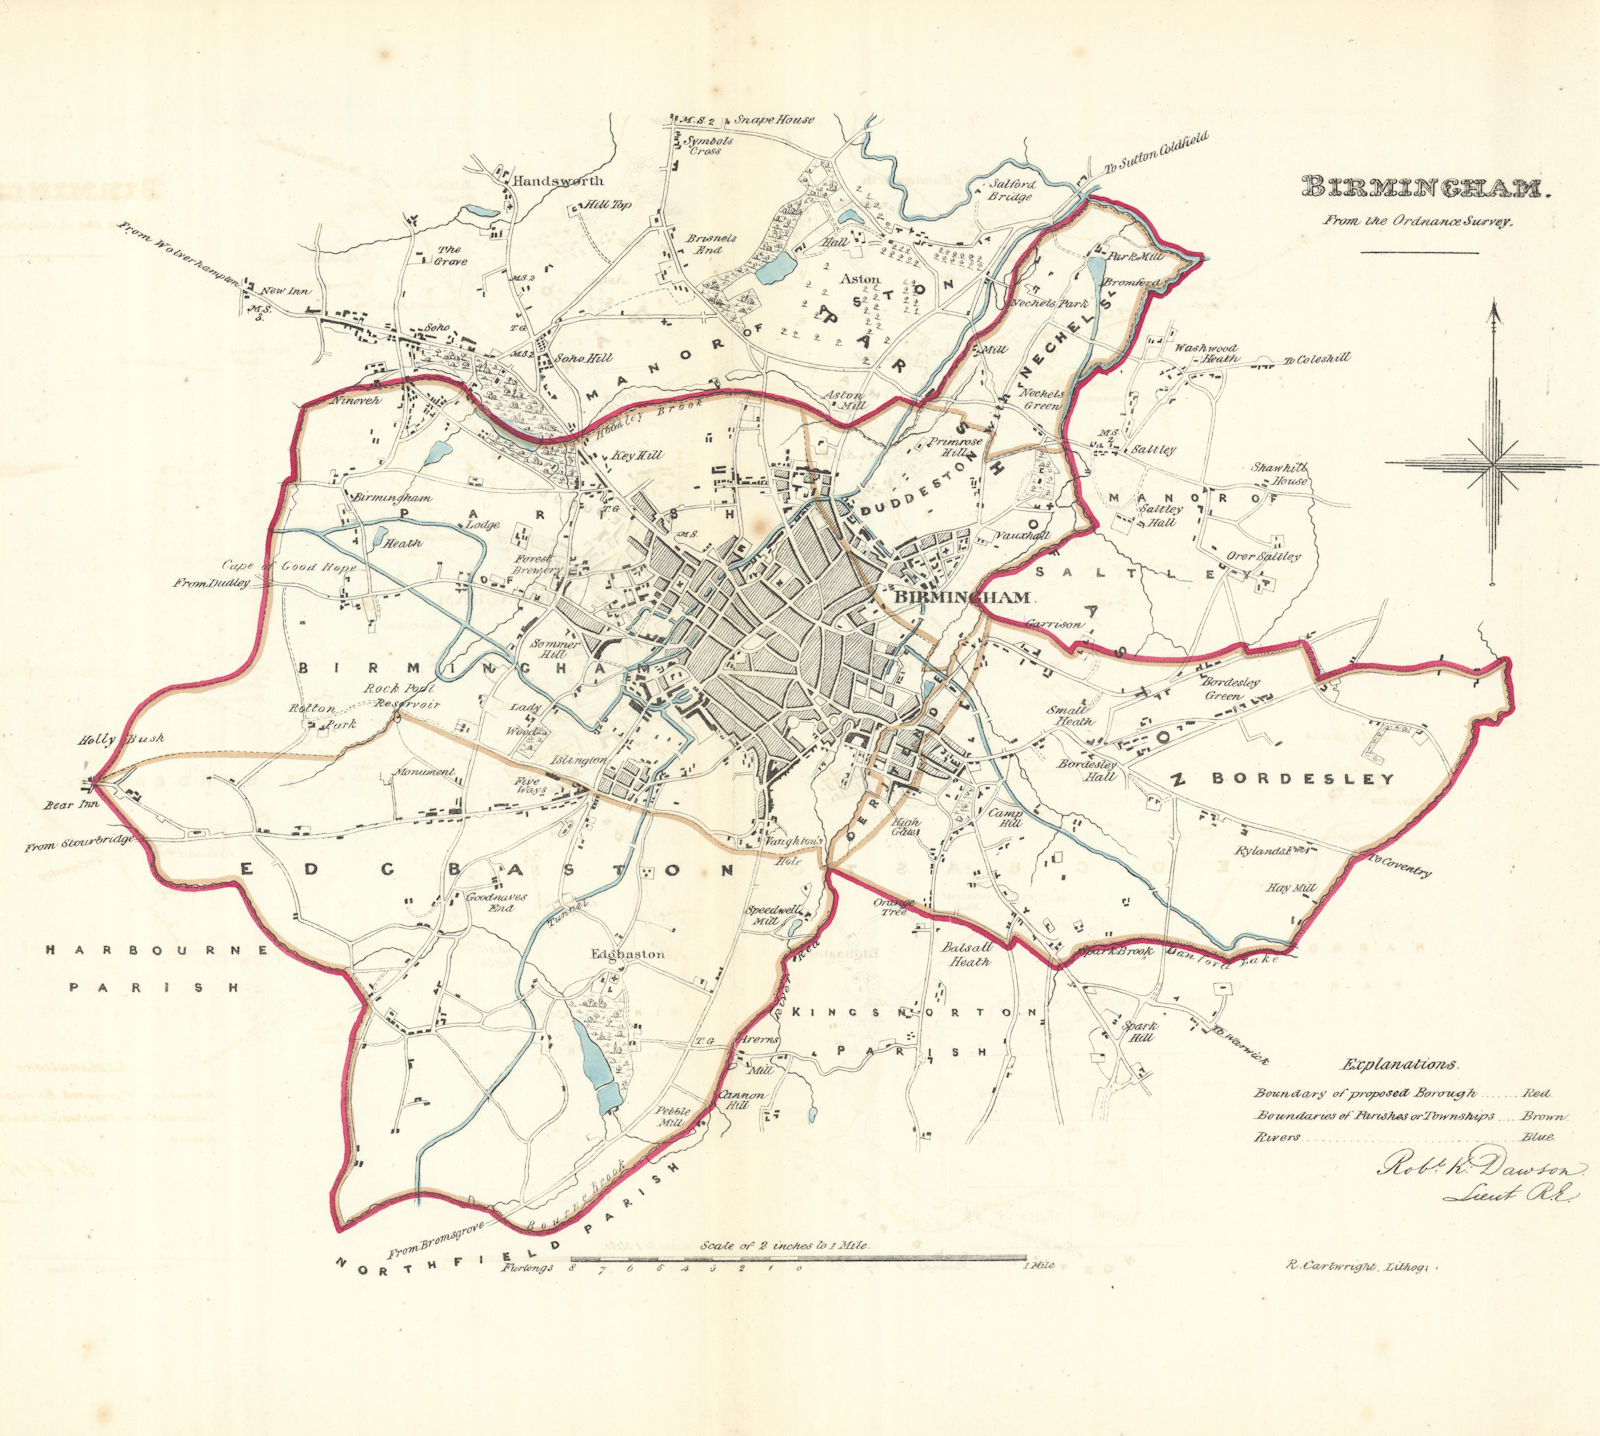 BIRMINGHAM borough/town/city plan. REFORM ACT. Edgbaston Aston. DAWSON 1832 map